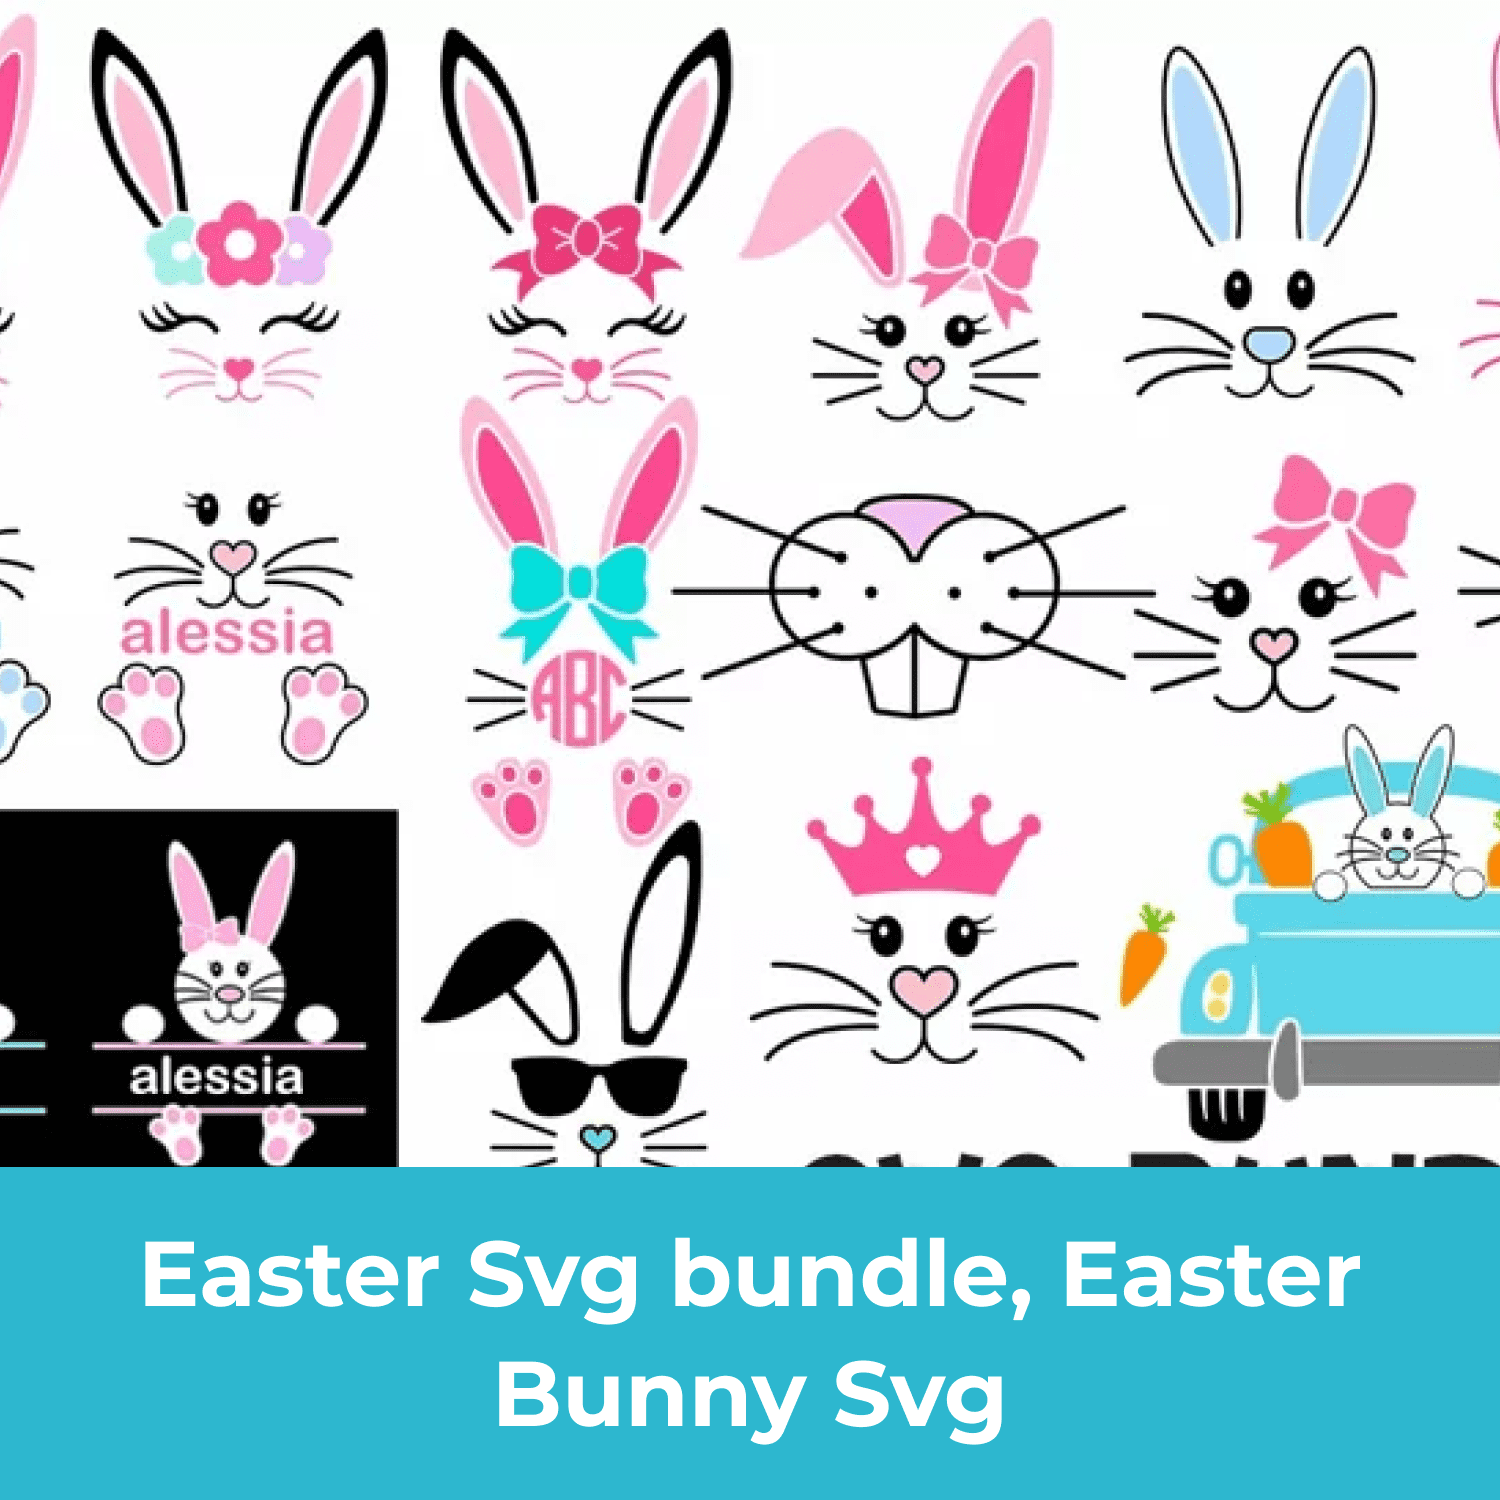 Easter Svg bundle, Easter Bunny Svg cover.